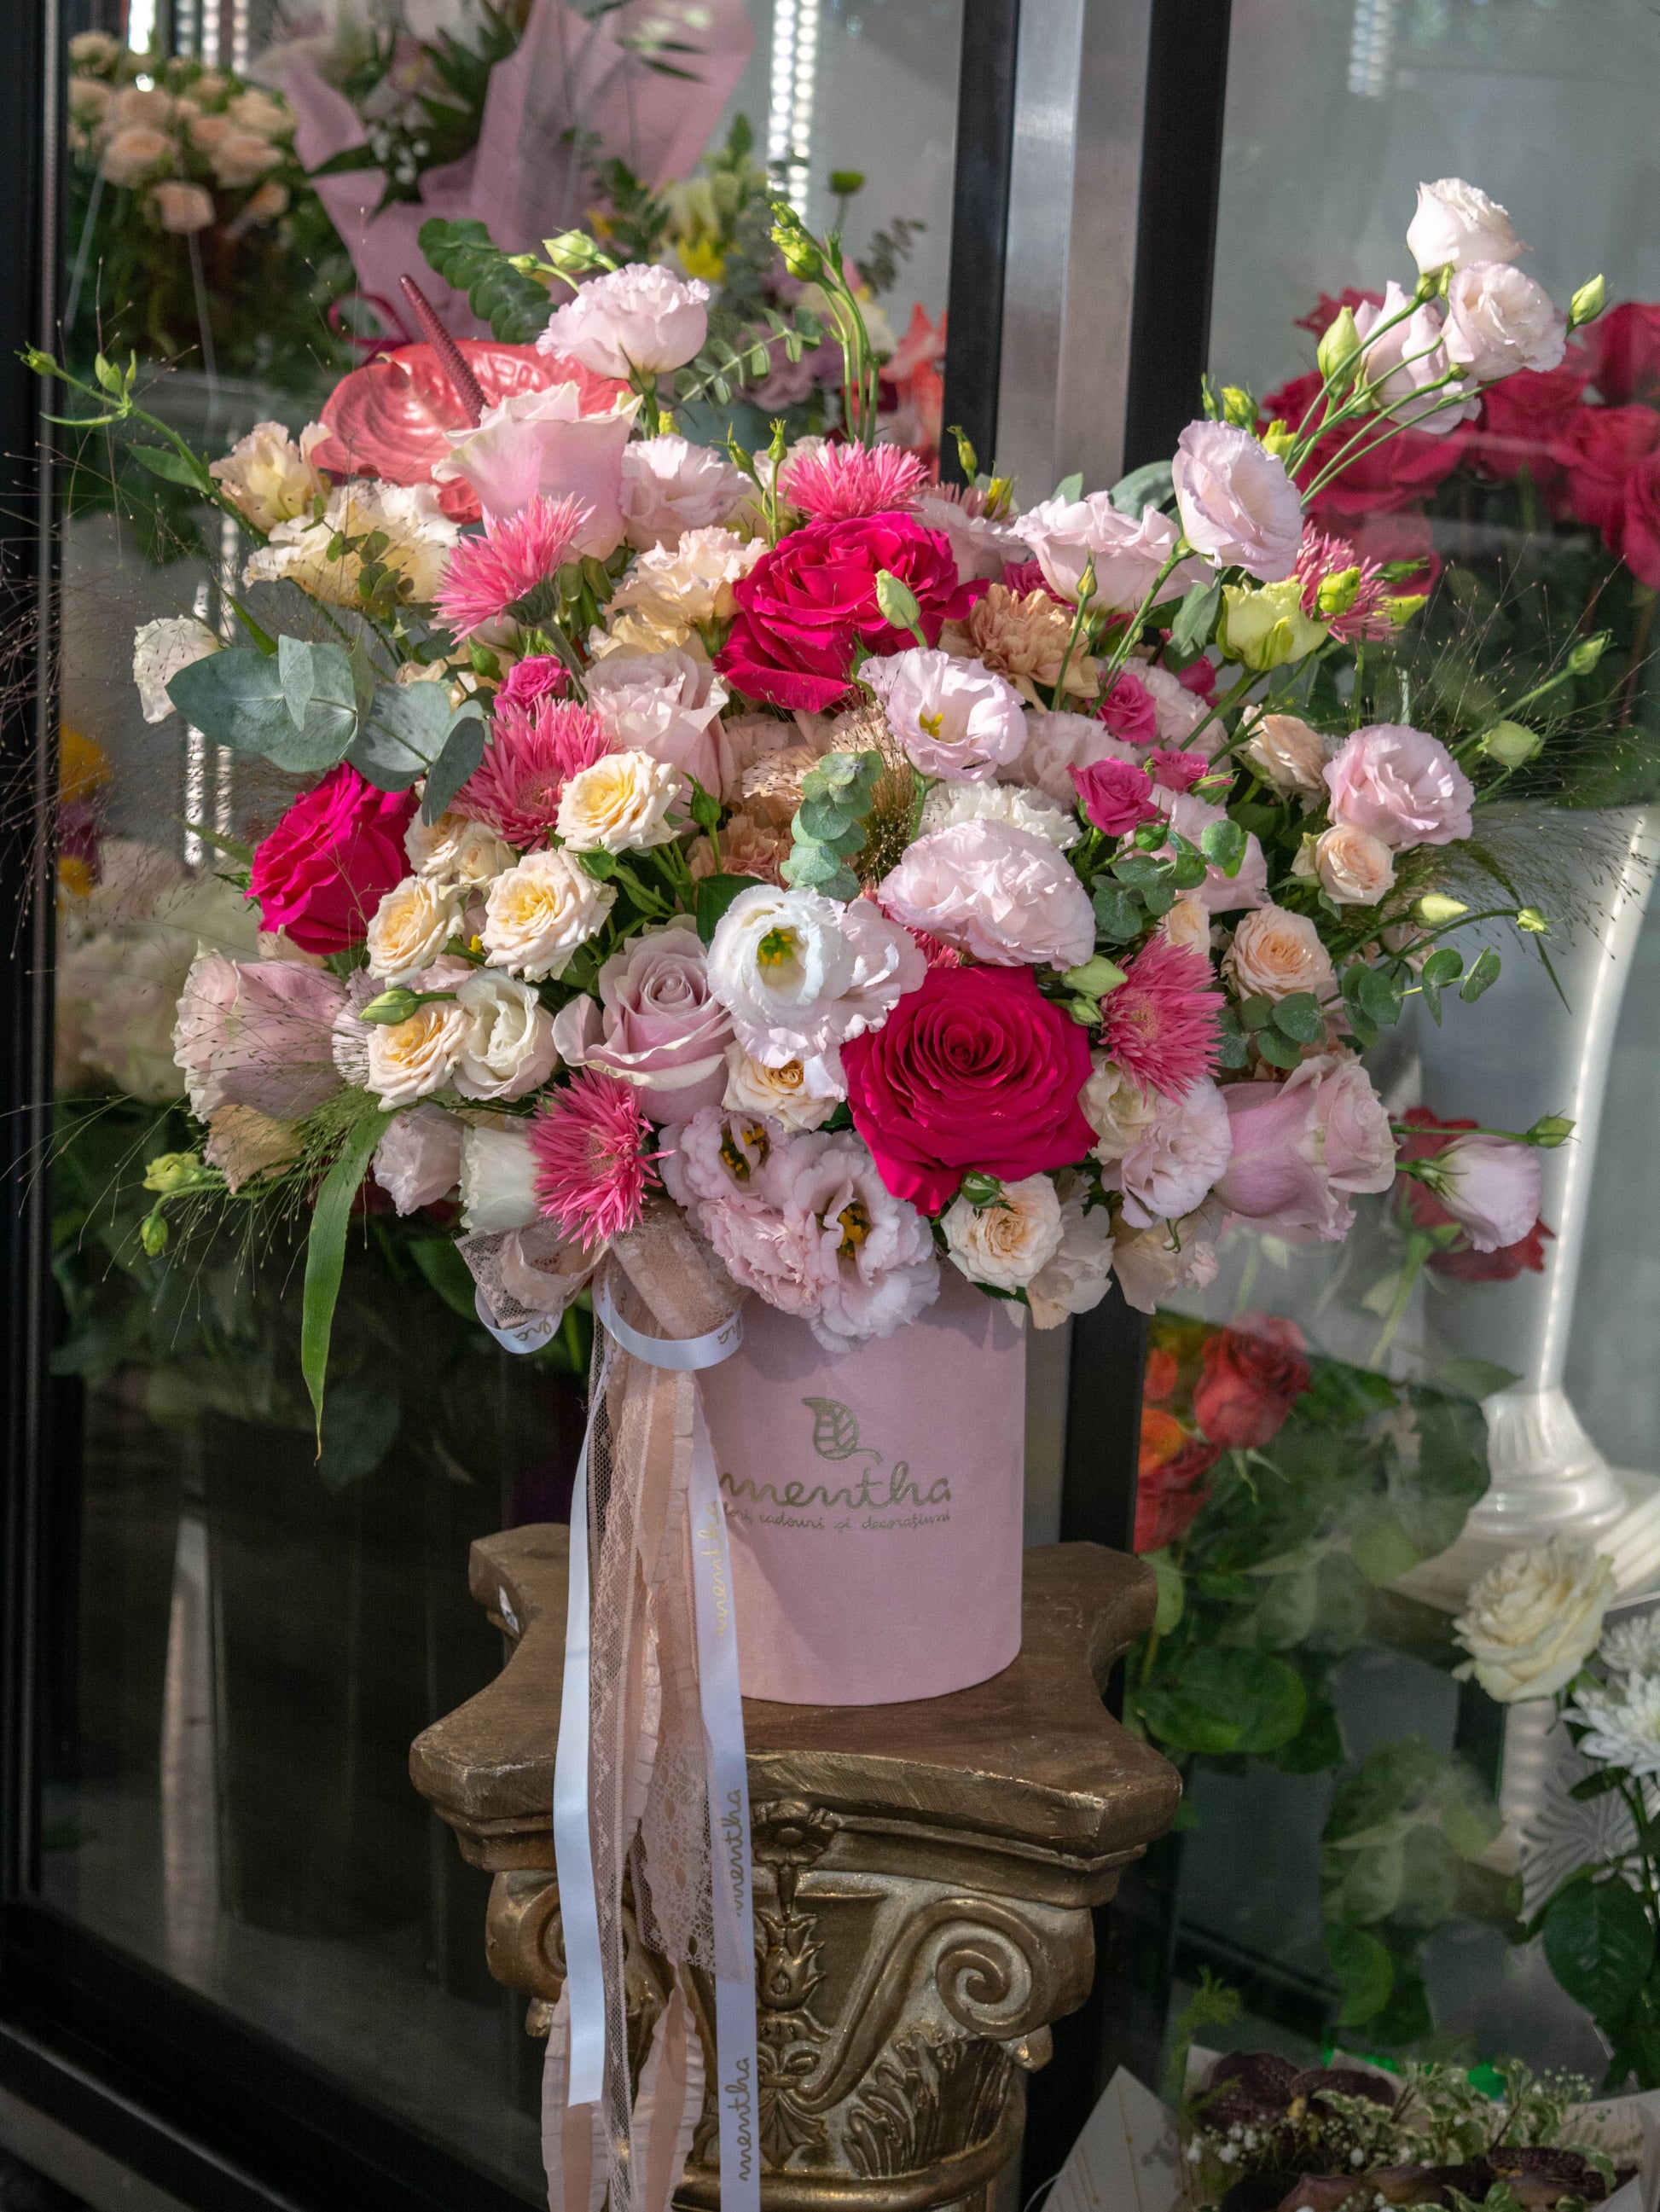 Bucurați-vă de prospețimea și parfumul florilor: ultima imagine din colecția noastră, surprinzând toată splendoarea acestei cutii cu flori tablou, cu livrare GRATUITĂ în Resita.